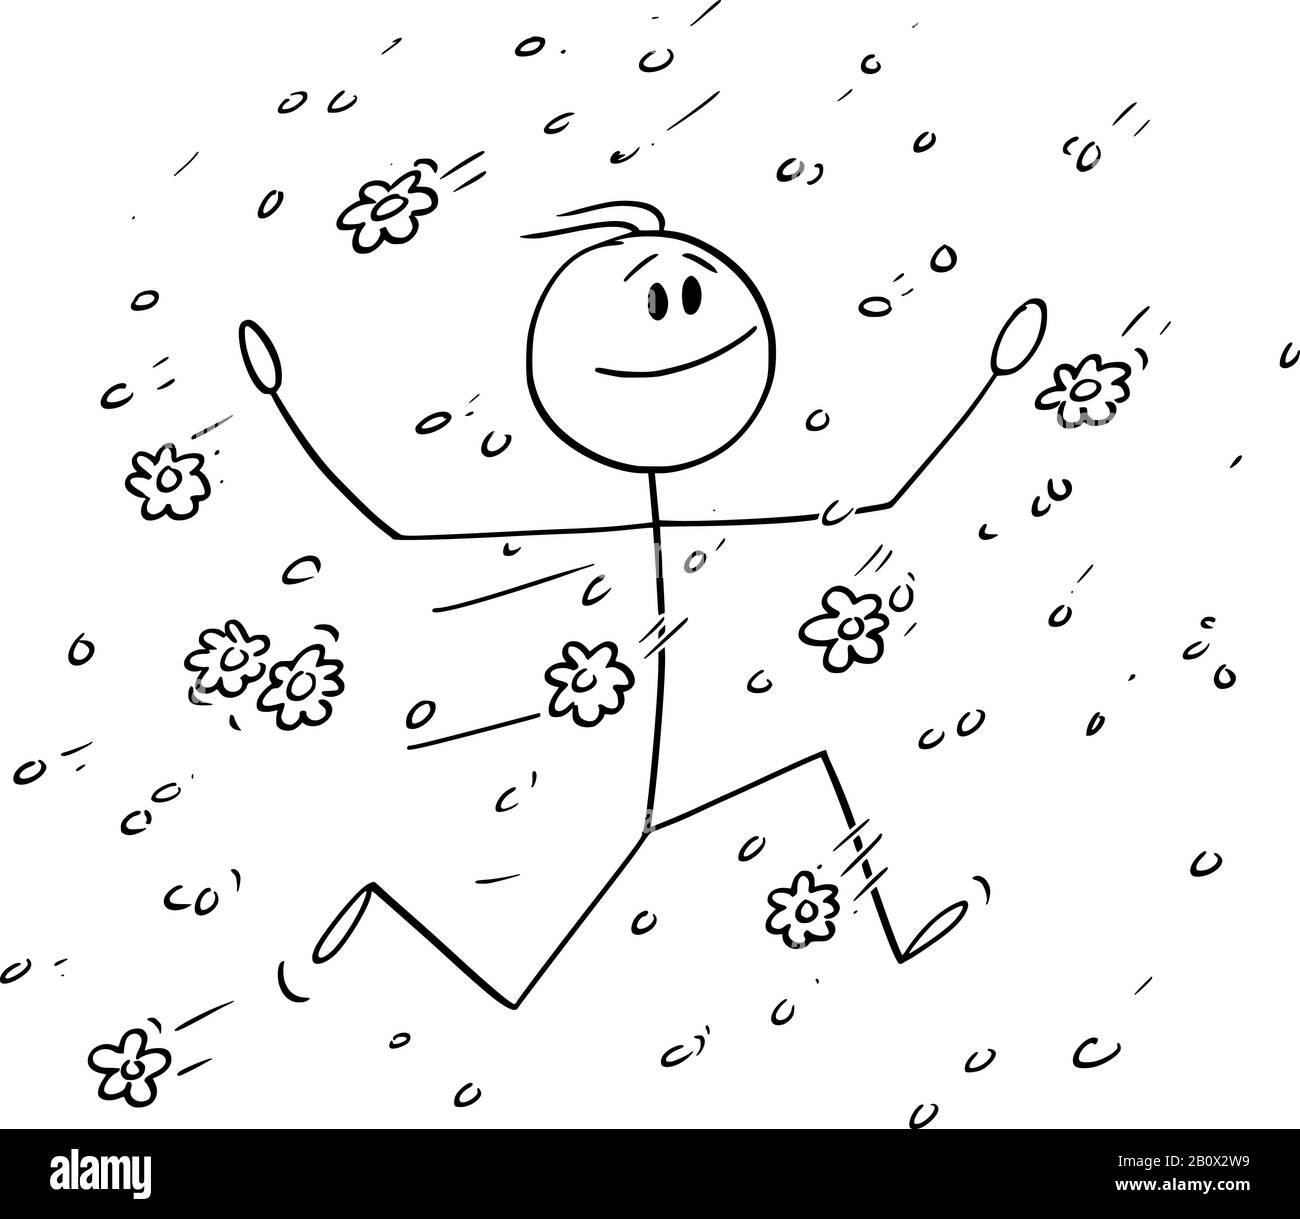 Vektor-Zeichentrickstickfigur, die konzeptionelle Illustration des glücklichen Mannes oder Geschäftsmannes zeichnet, der im Regen fallender Blumen, Blumen, Blüte oder Blüte läuft. Stock Vektor